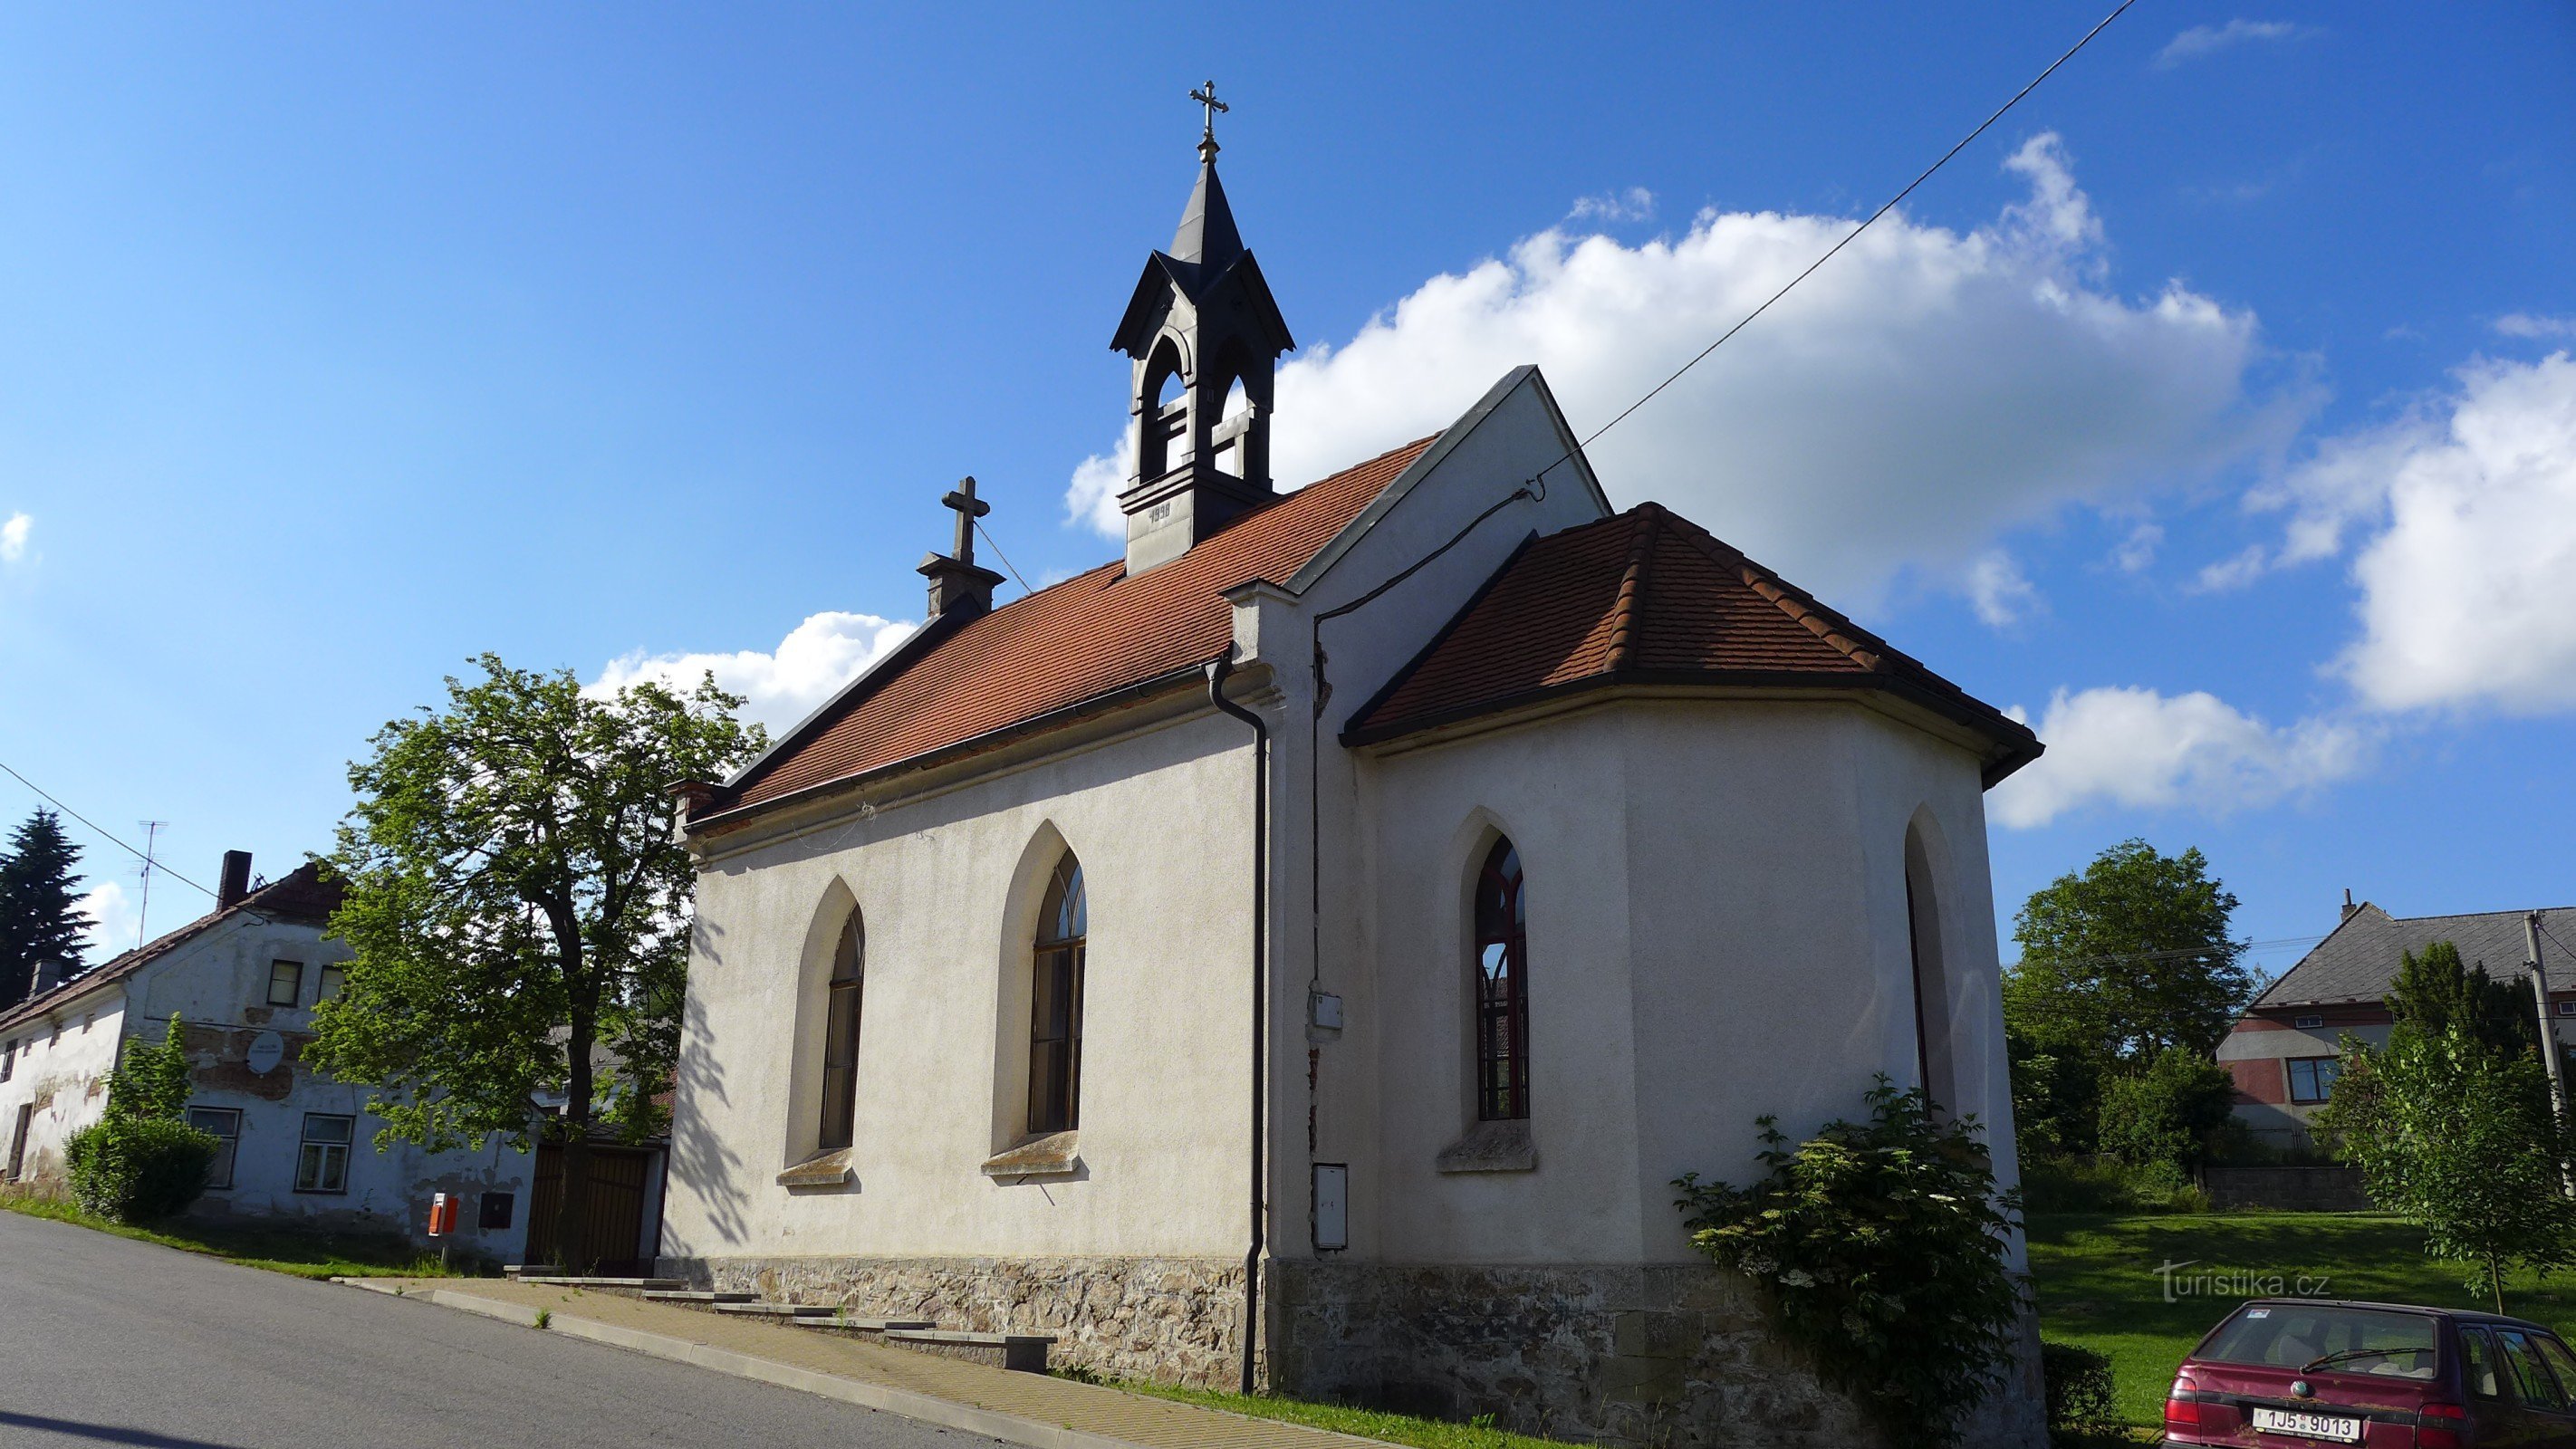 Jindřichovice - capela de Nossa Senhora do Rosário